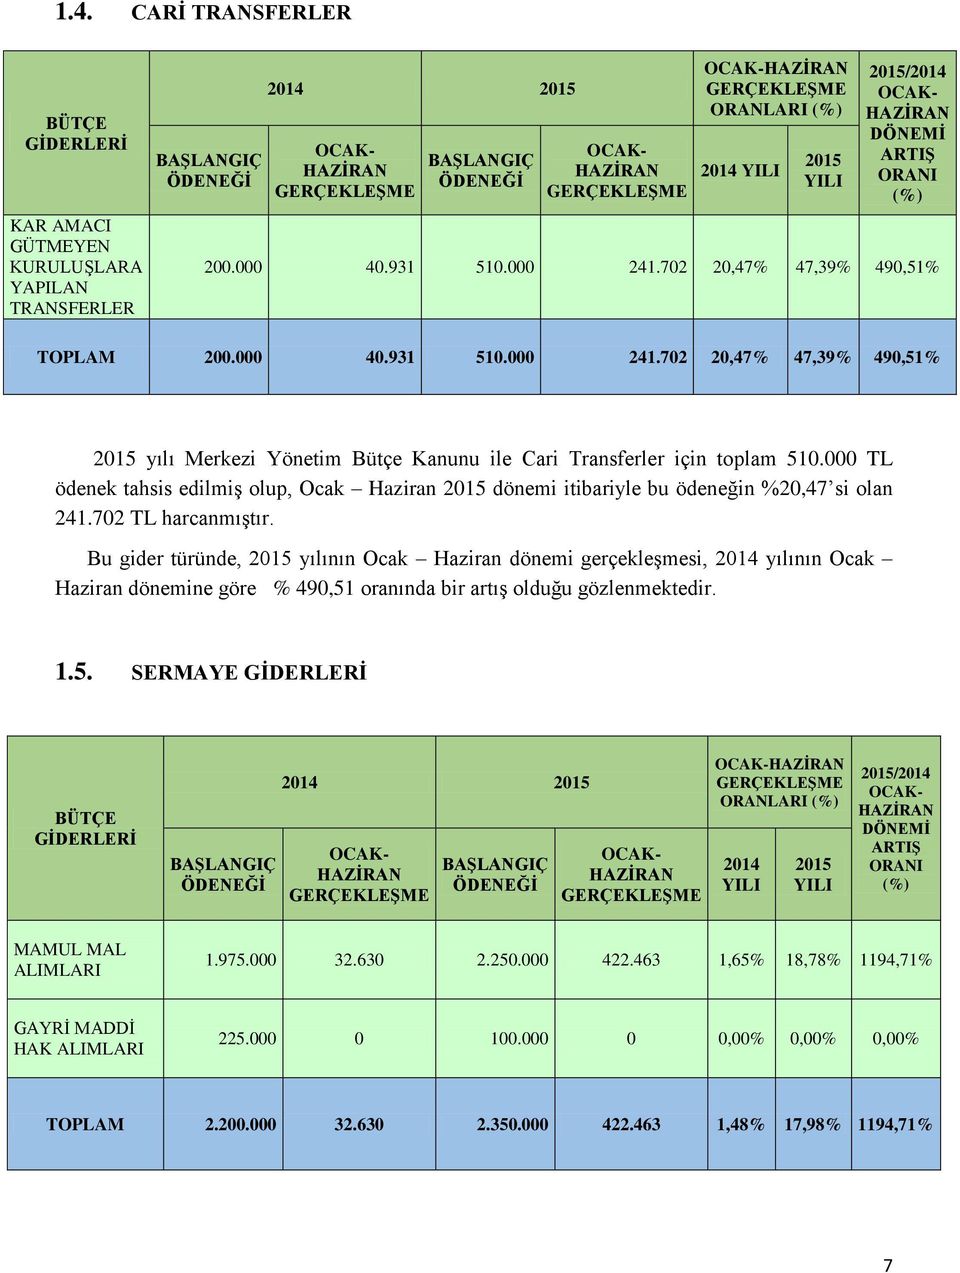 000 TL ödenek tahsis edilmiş olup, Ocak Haziran 2015 dönemi itibariyle bu ödeneğin %20,47 si olan 241.702 TL harcanmıştır.